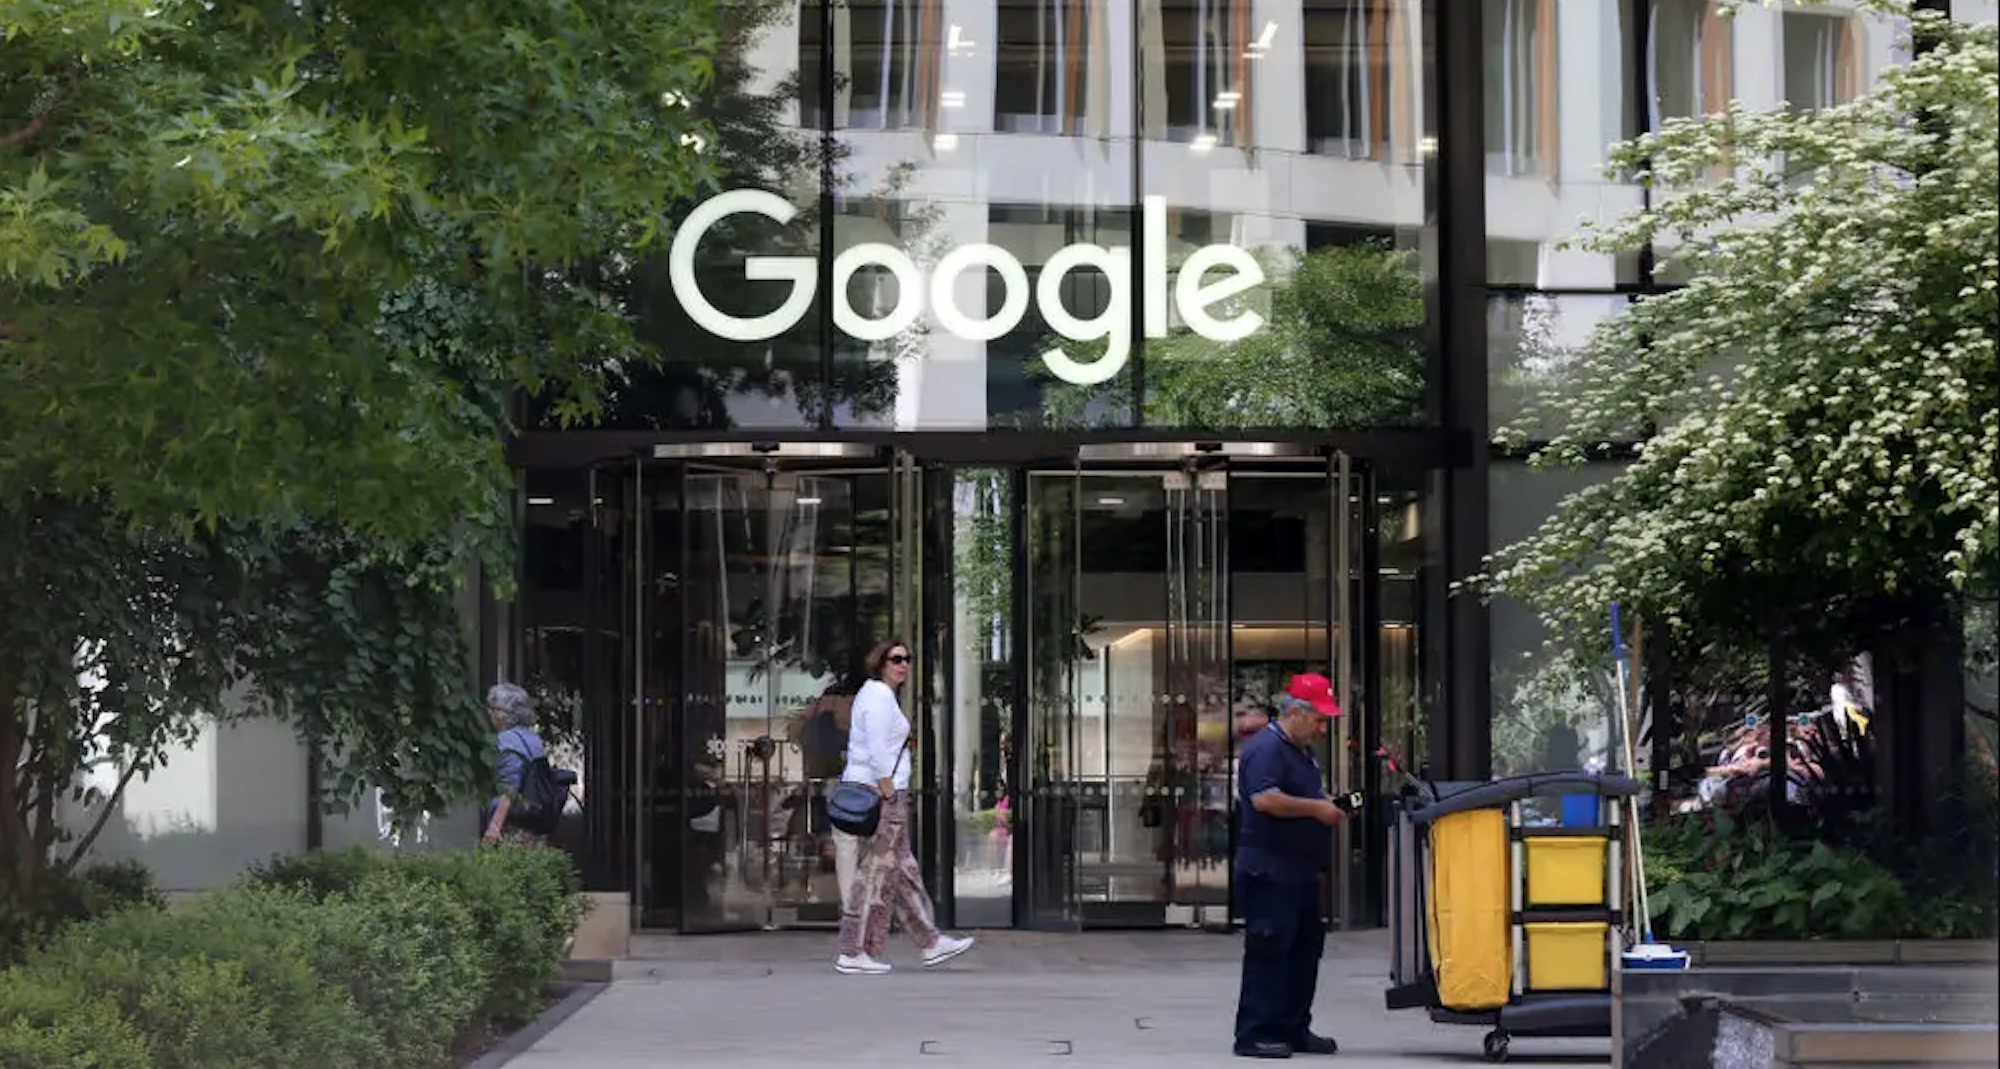 trabajar para google era emocionante, pero ahora es en una pesadilla, según informes